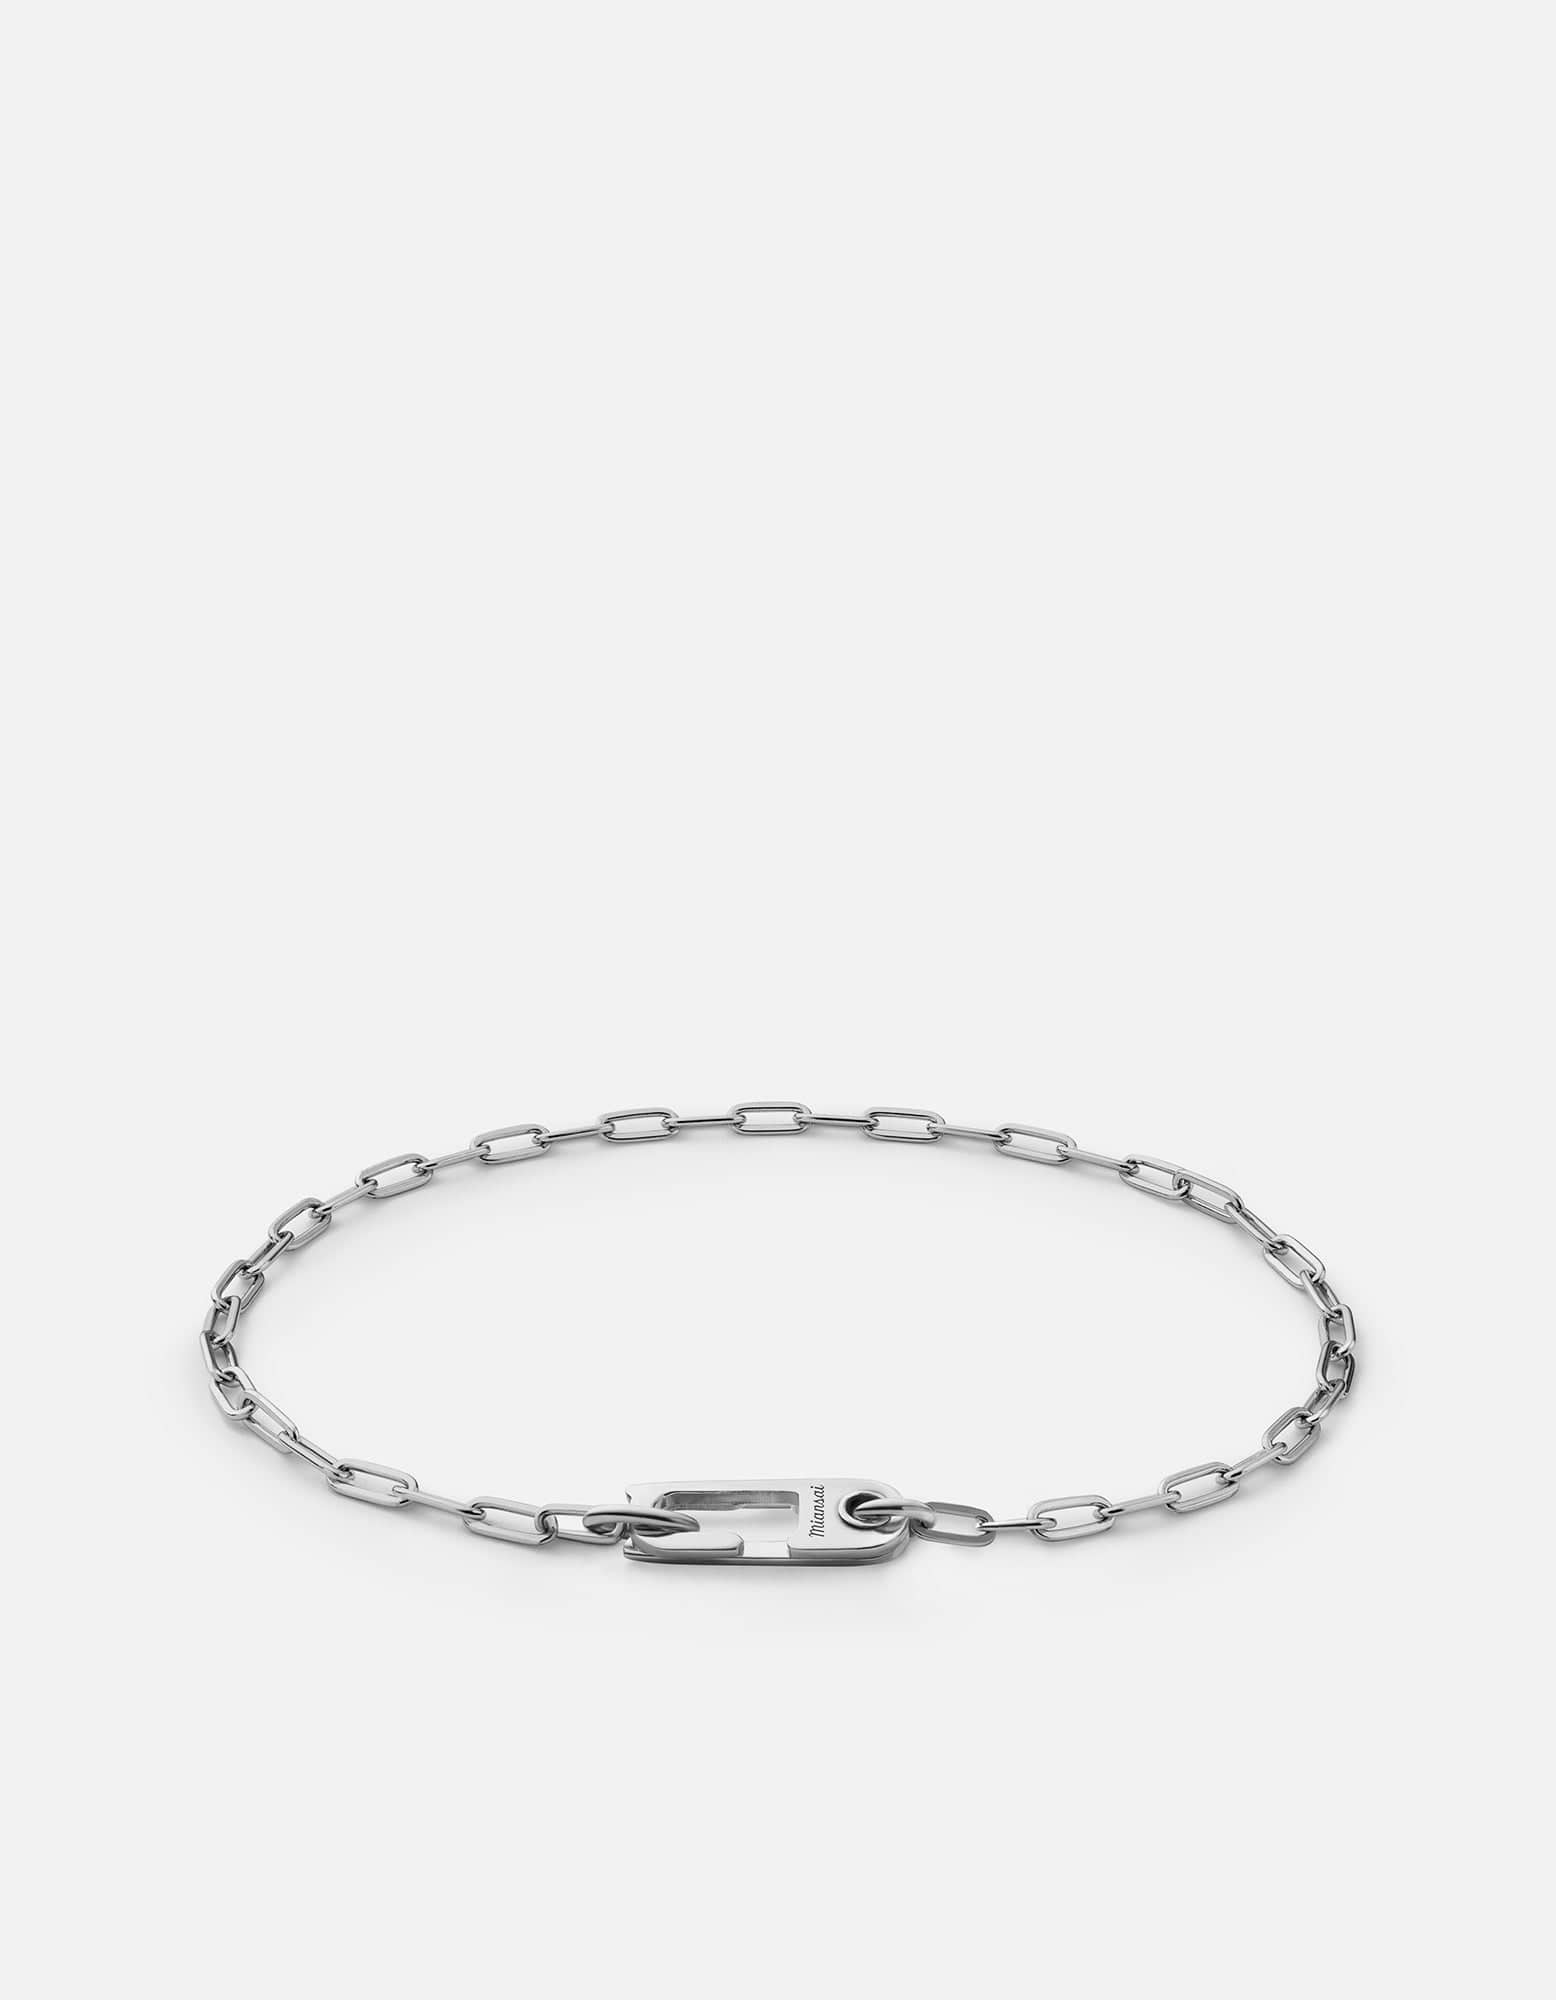 Annex Volt Link Bracelet, Sterling Silver | Men's Bracelets | Miansai